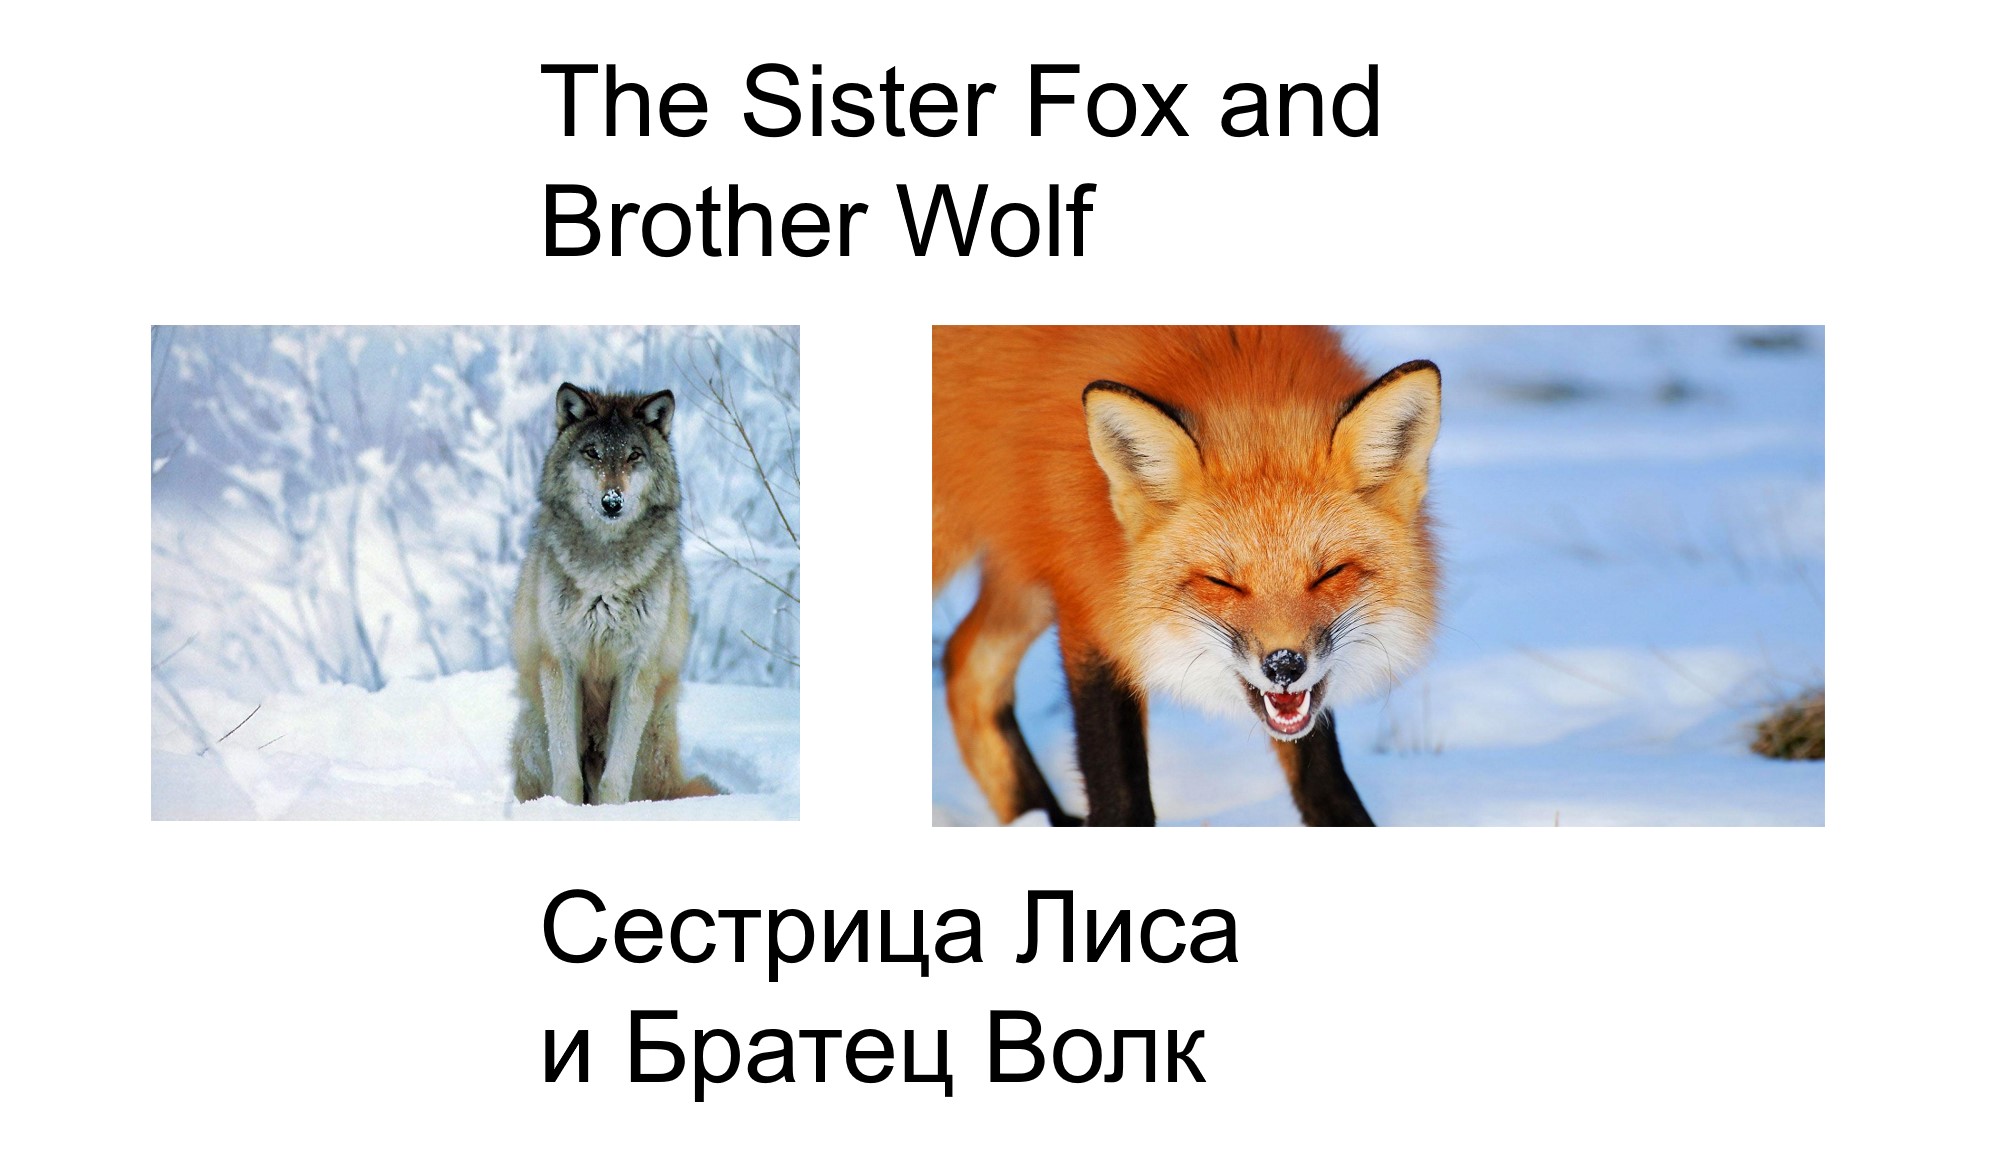 Sister fox. Сестрица лиса и братец волк. Лис. Лиса в детстве. Лиса 2 мая.